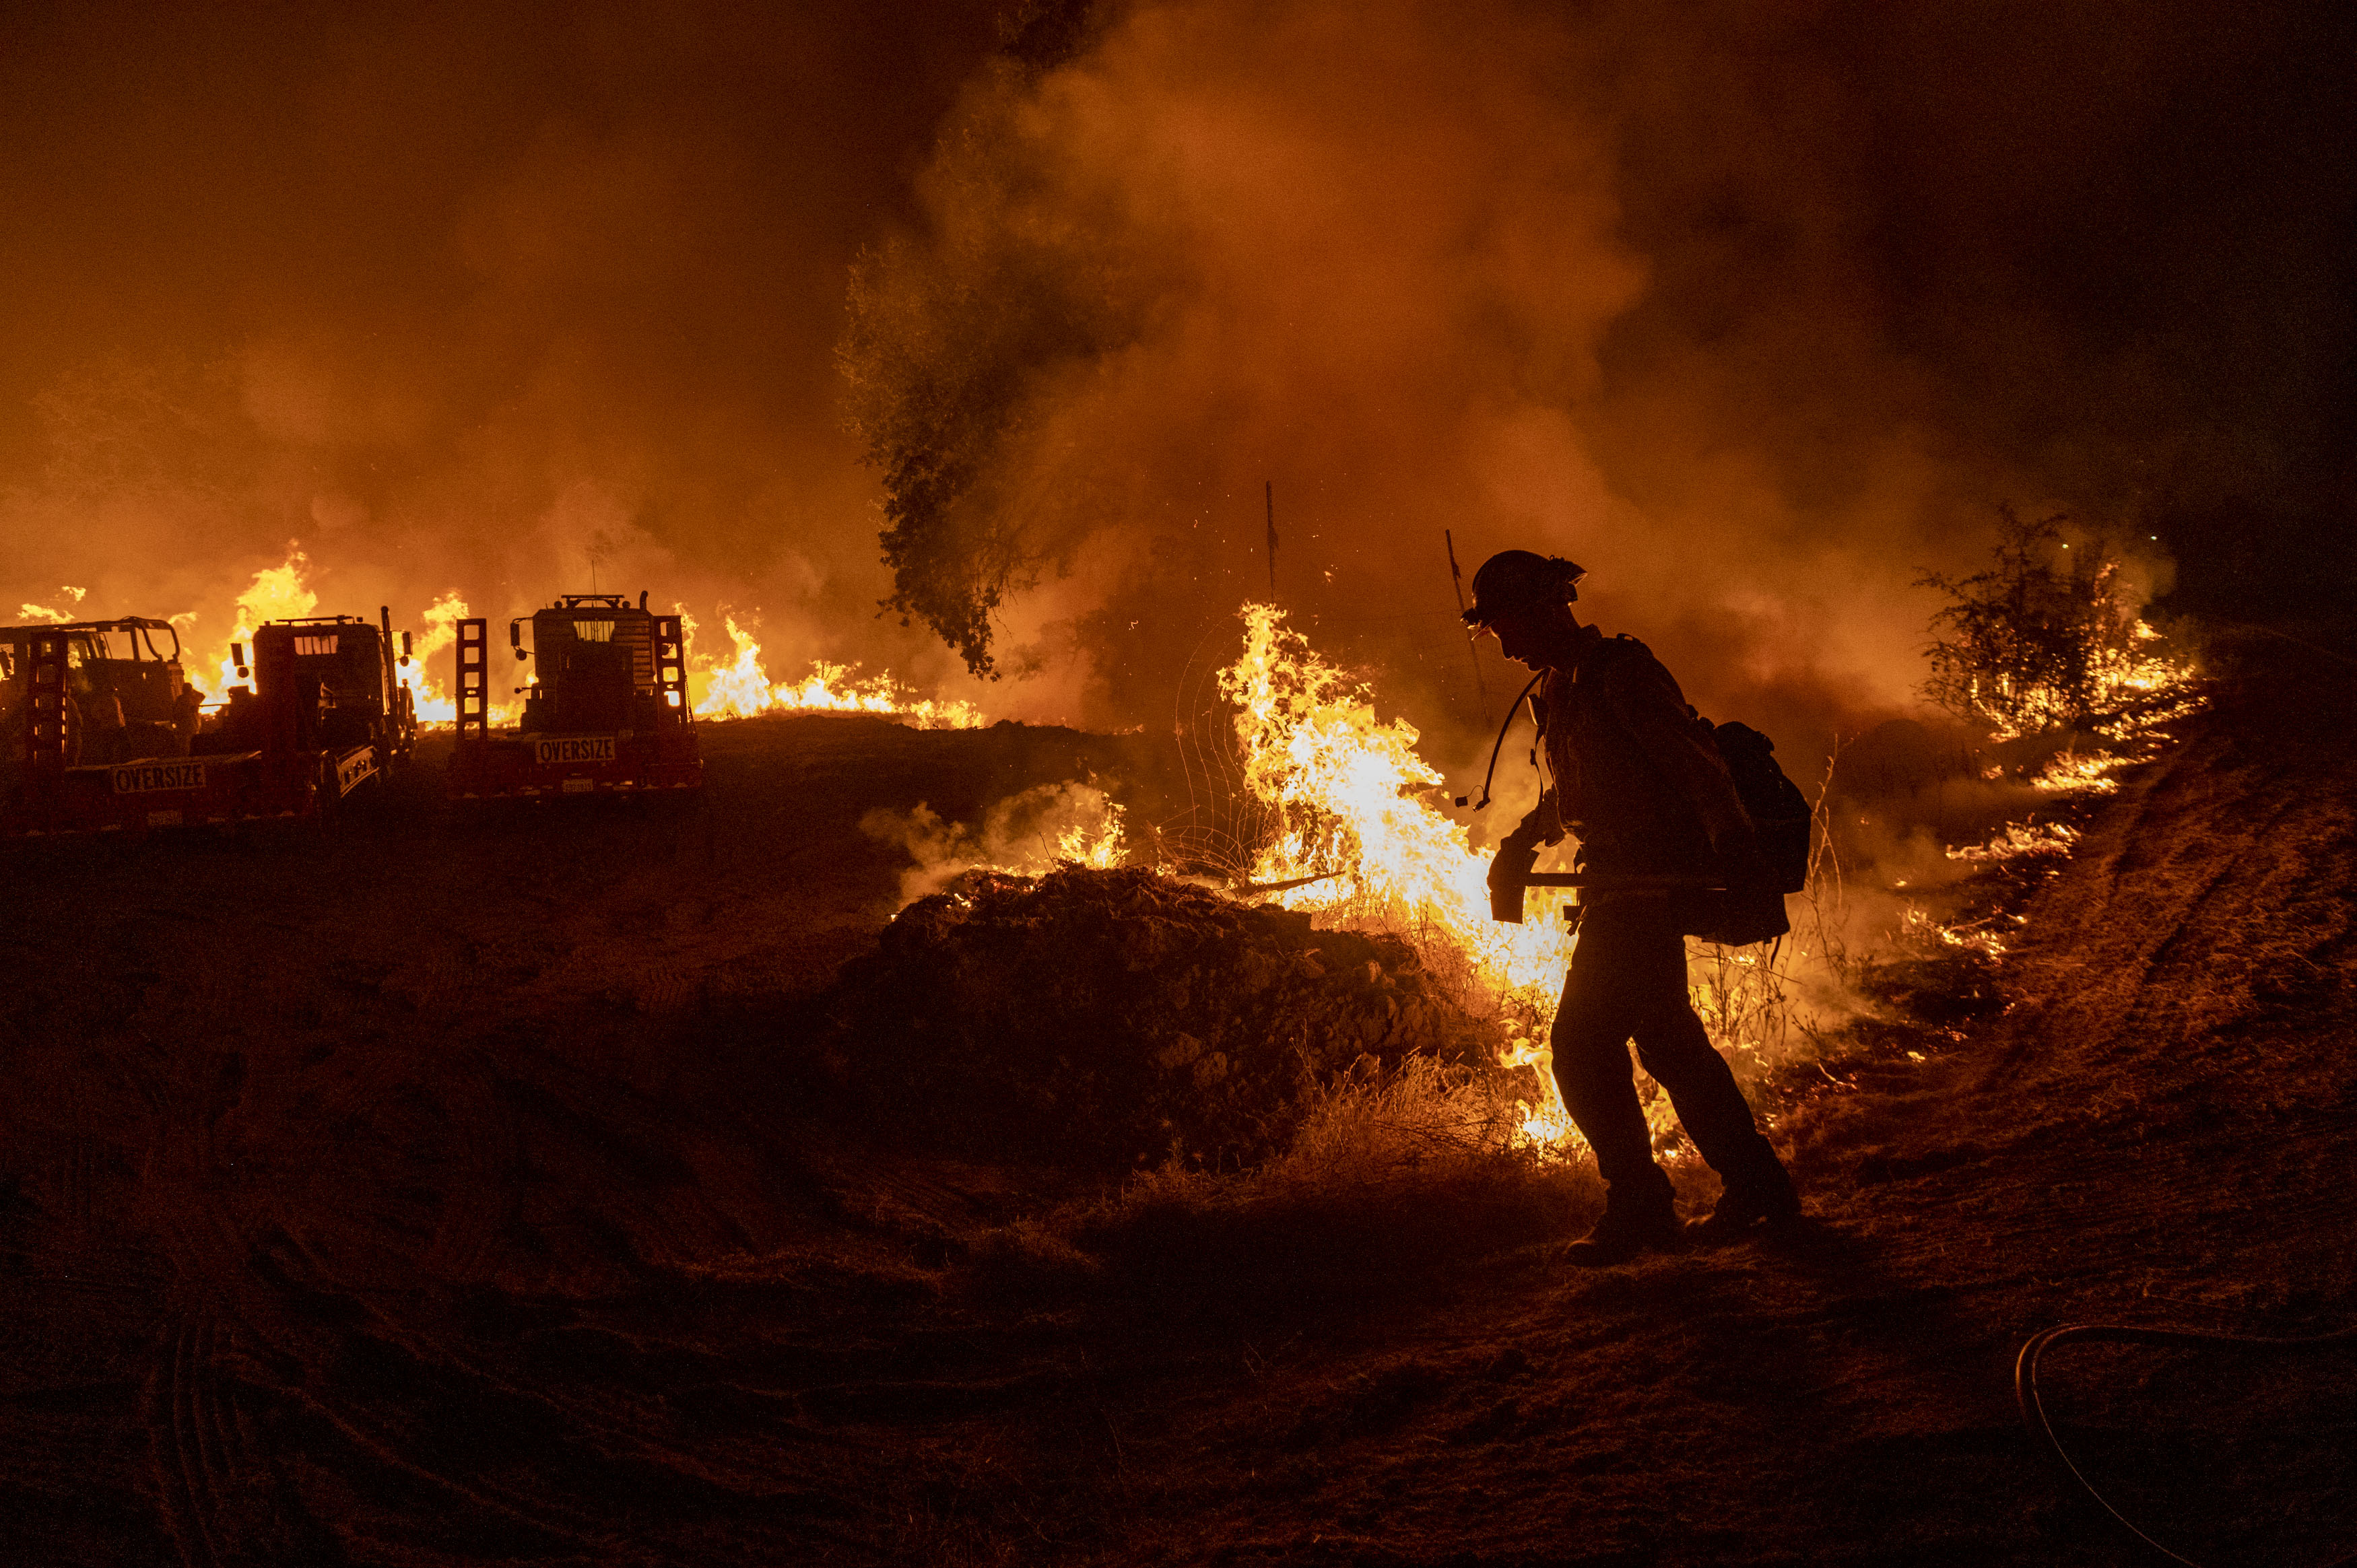 A firefighter battles a blaze in darkness